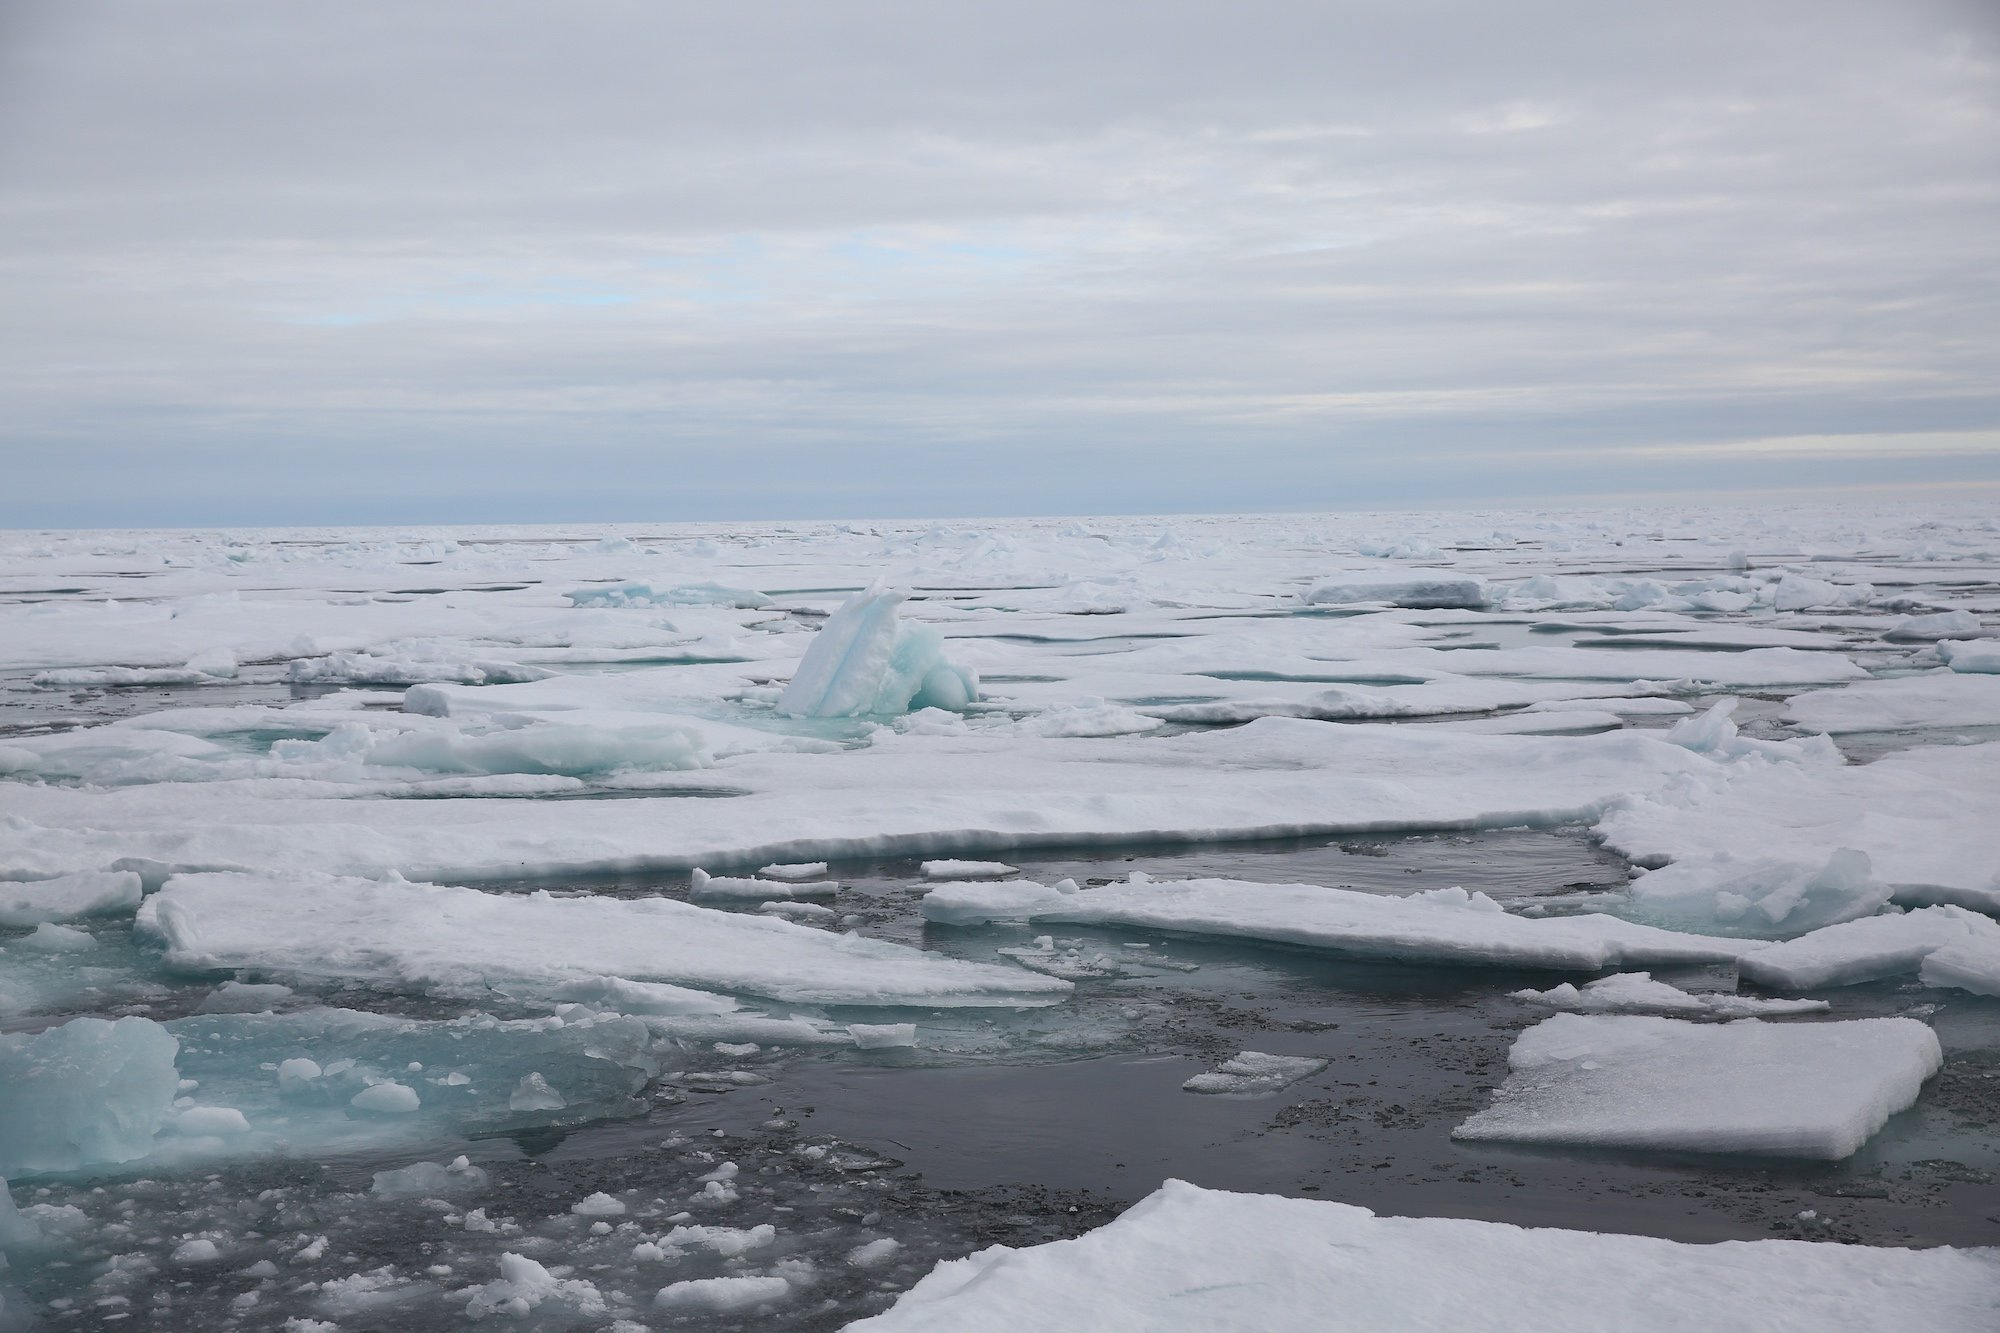 От южных морей до полярного края крым. Незамерзающее арктическое море. Арктика Онега. Кромка льда в Баренцевом море. Обледенение в Баренцевом море.